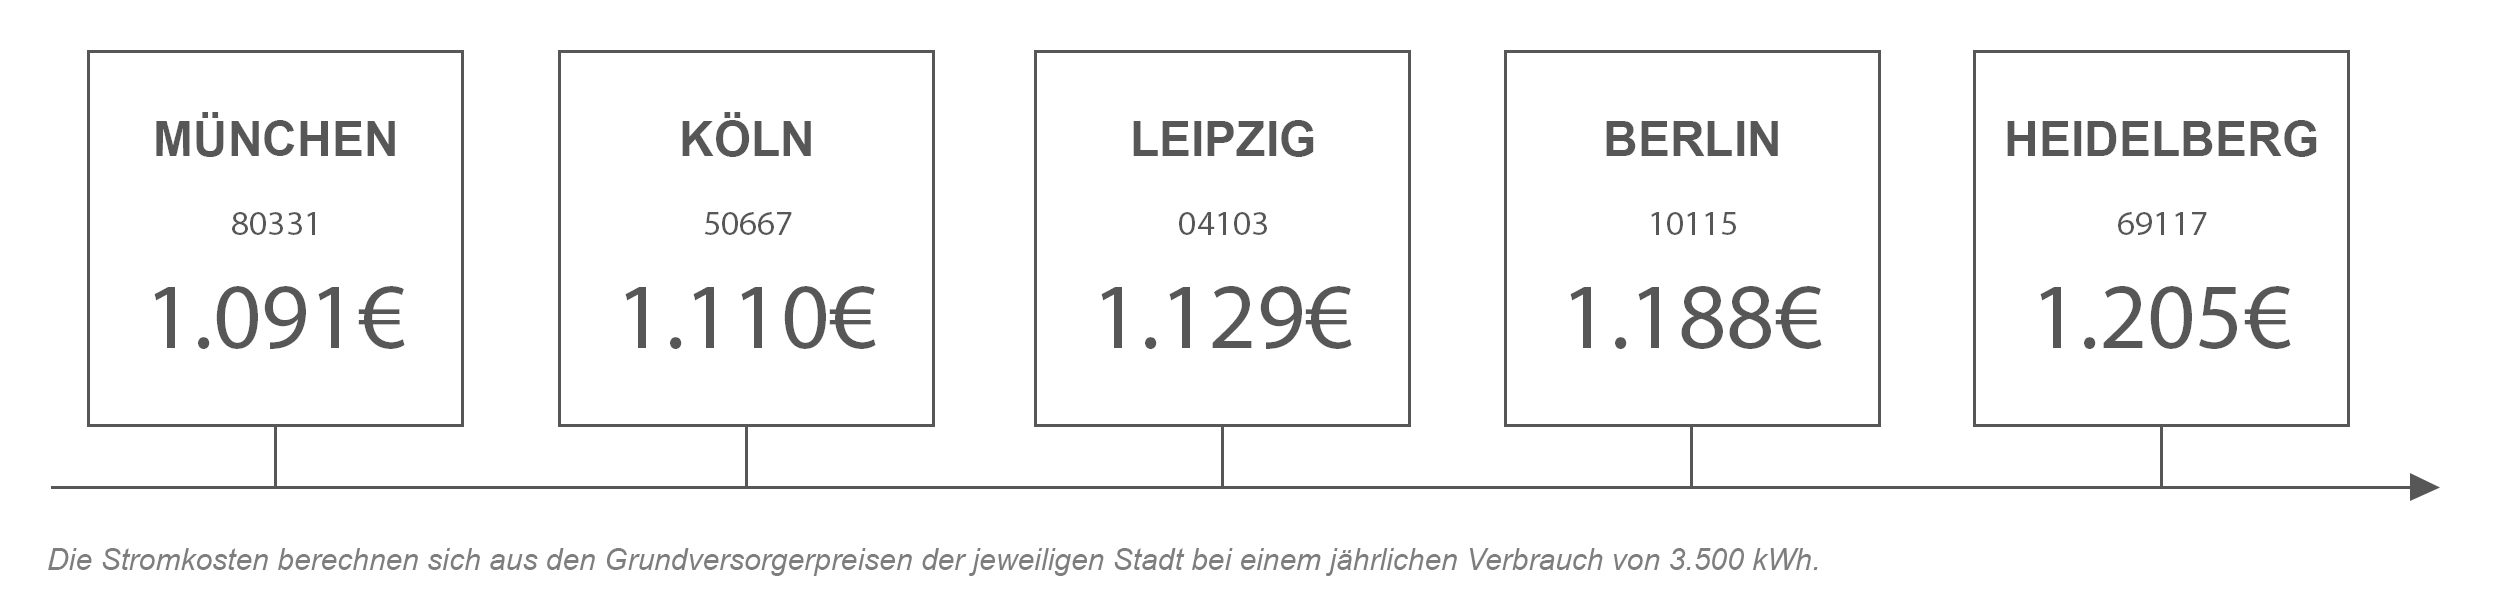 Strompreisvergleich von Heidelberg mit anderen Städten